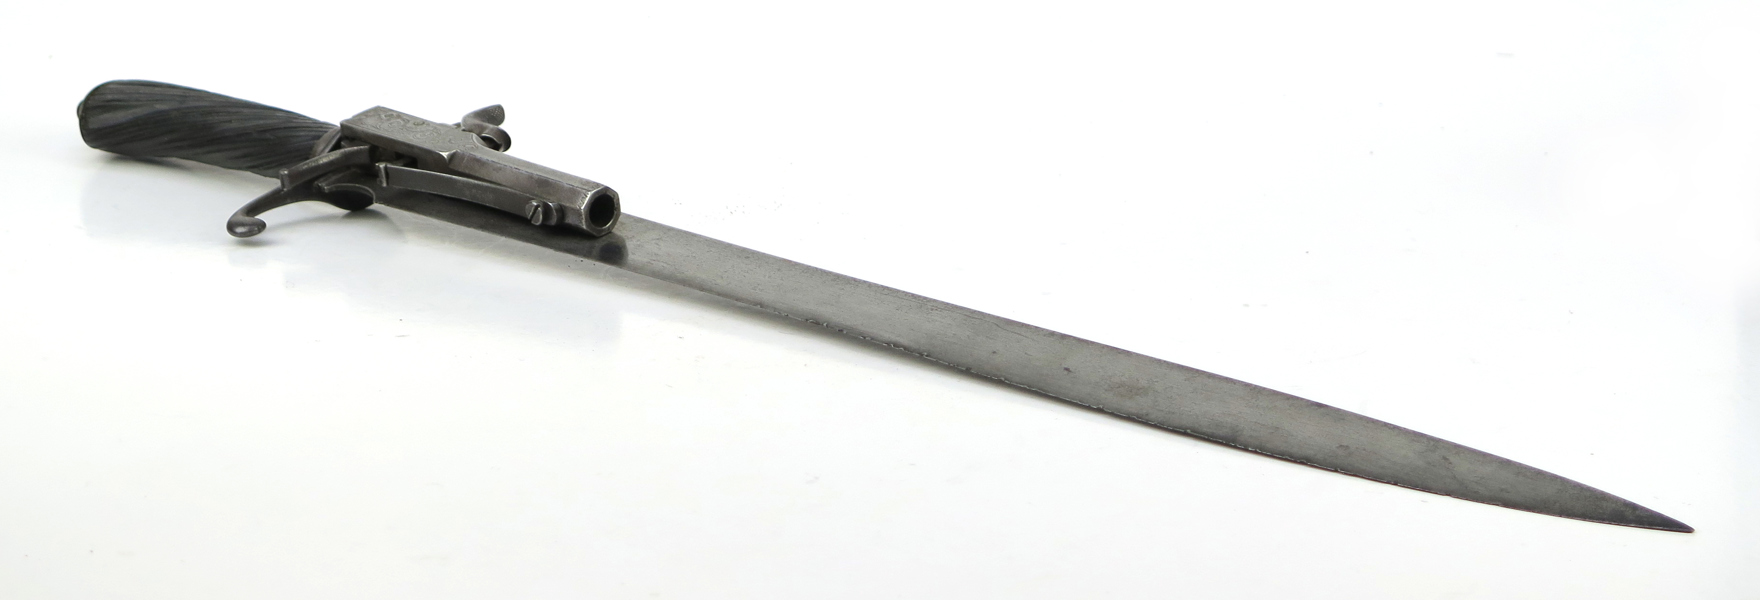 Hirschfänger med slaglåspistol, stål med ebenholtzfäste, 1800-talets 1 hälft, längd 45 cm_37147a_lg.jpeg